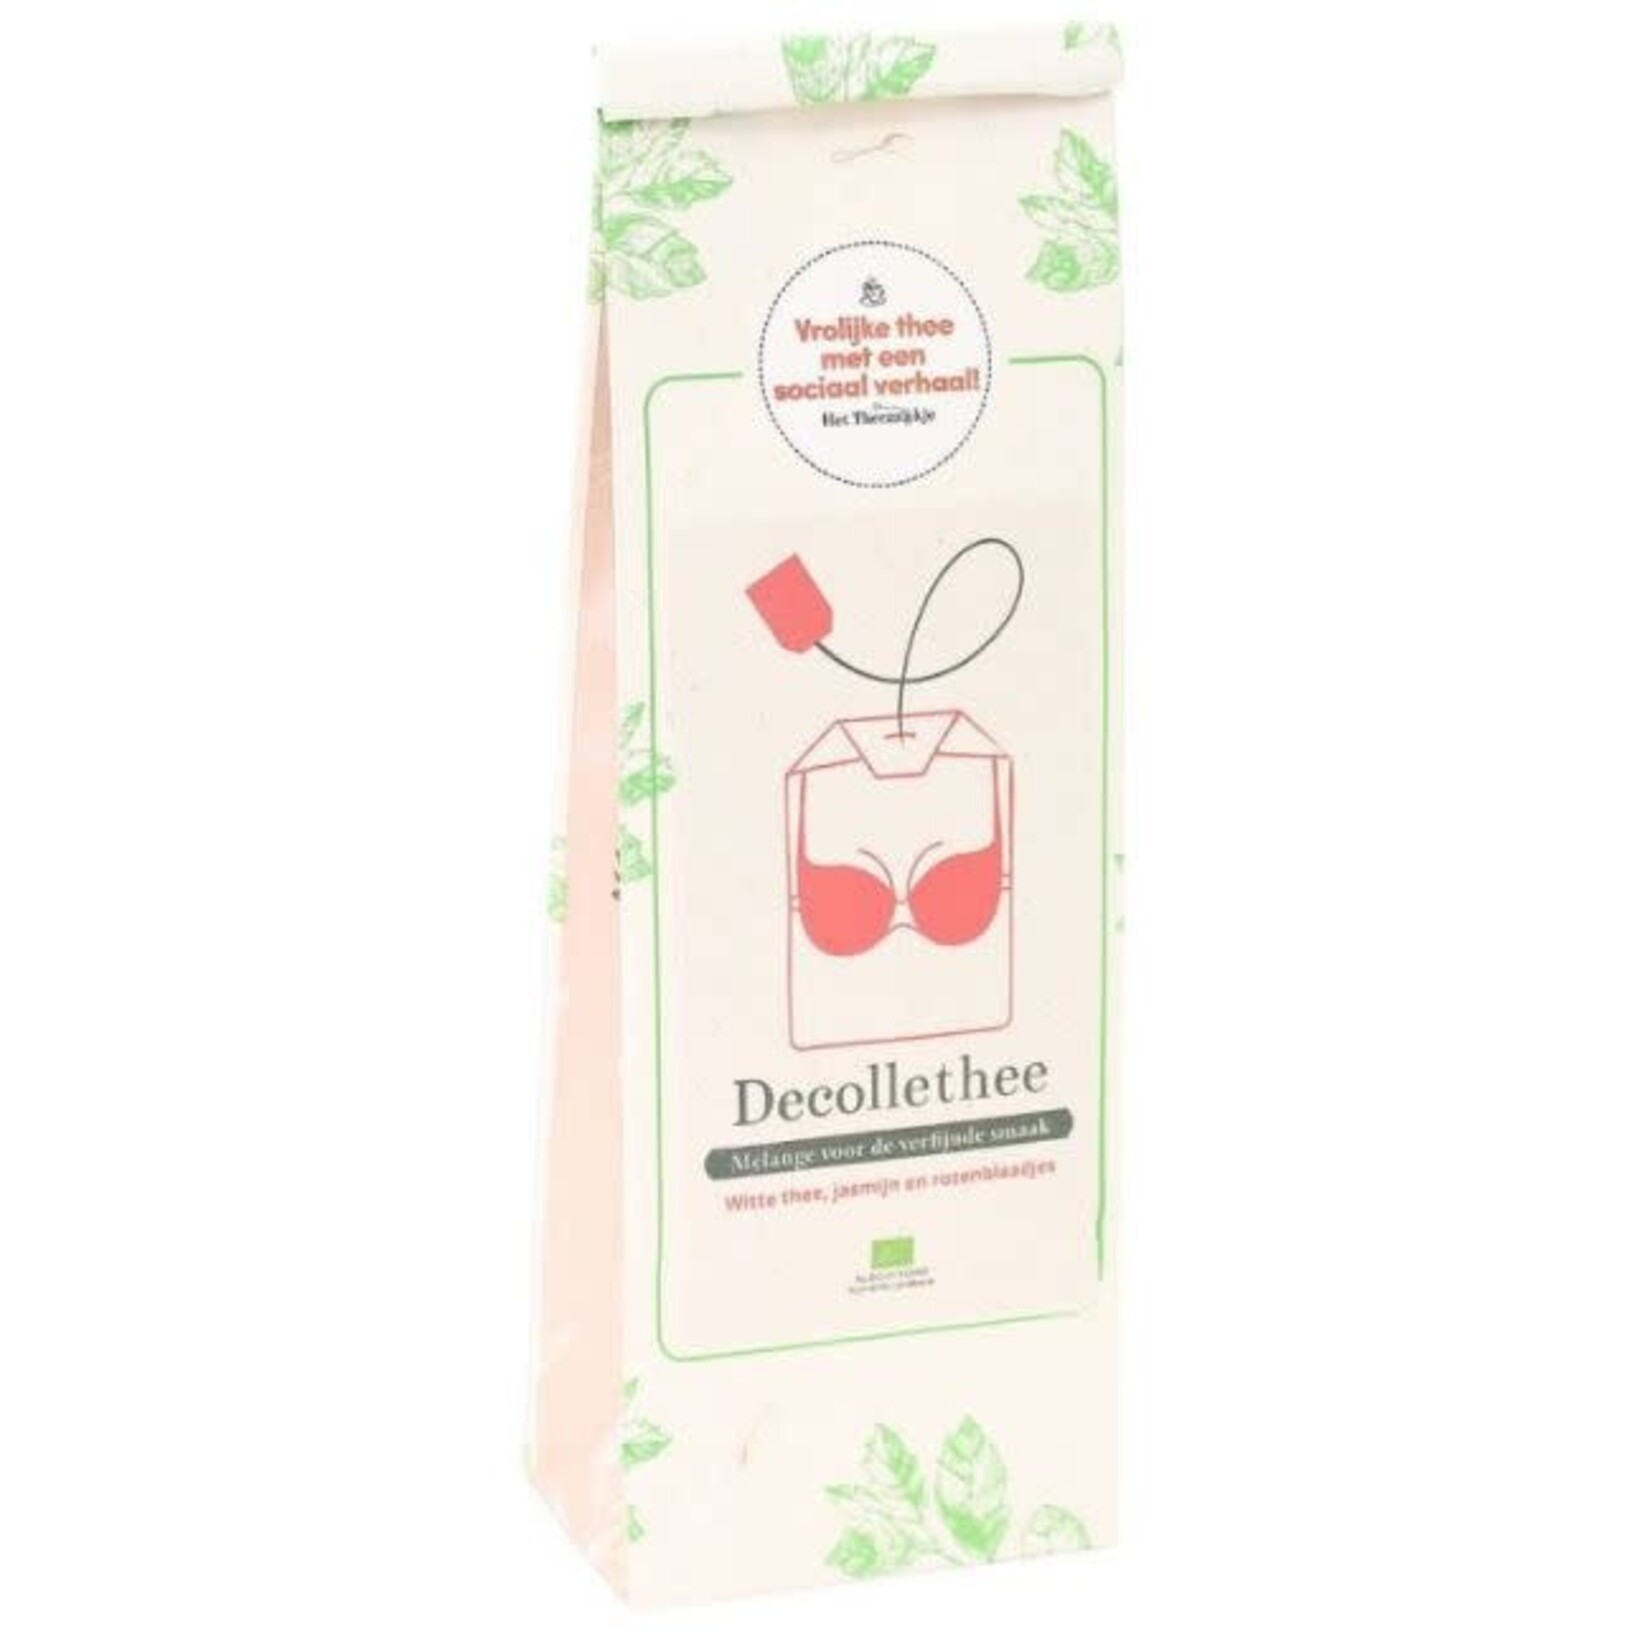 Het Theezaakje Decollethee, melange voor de verfijnde smaak: witte thee, jasmijn en rozenblaadjes (bio)